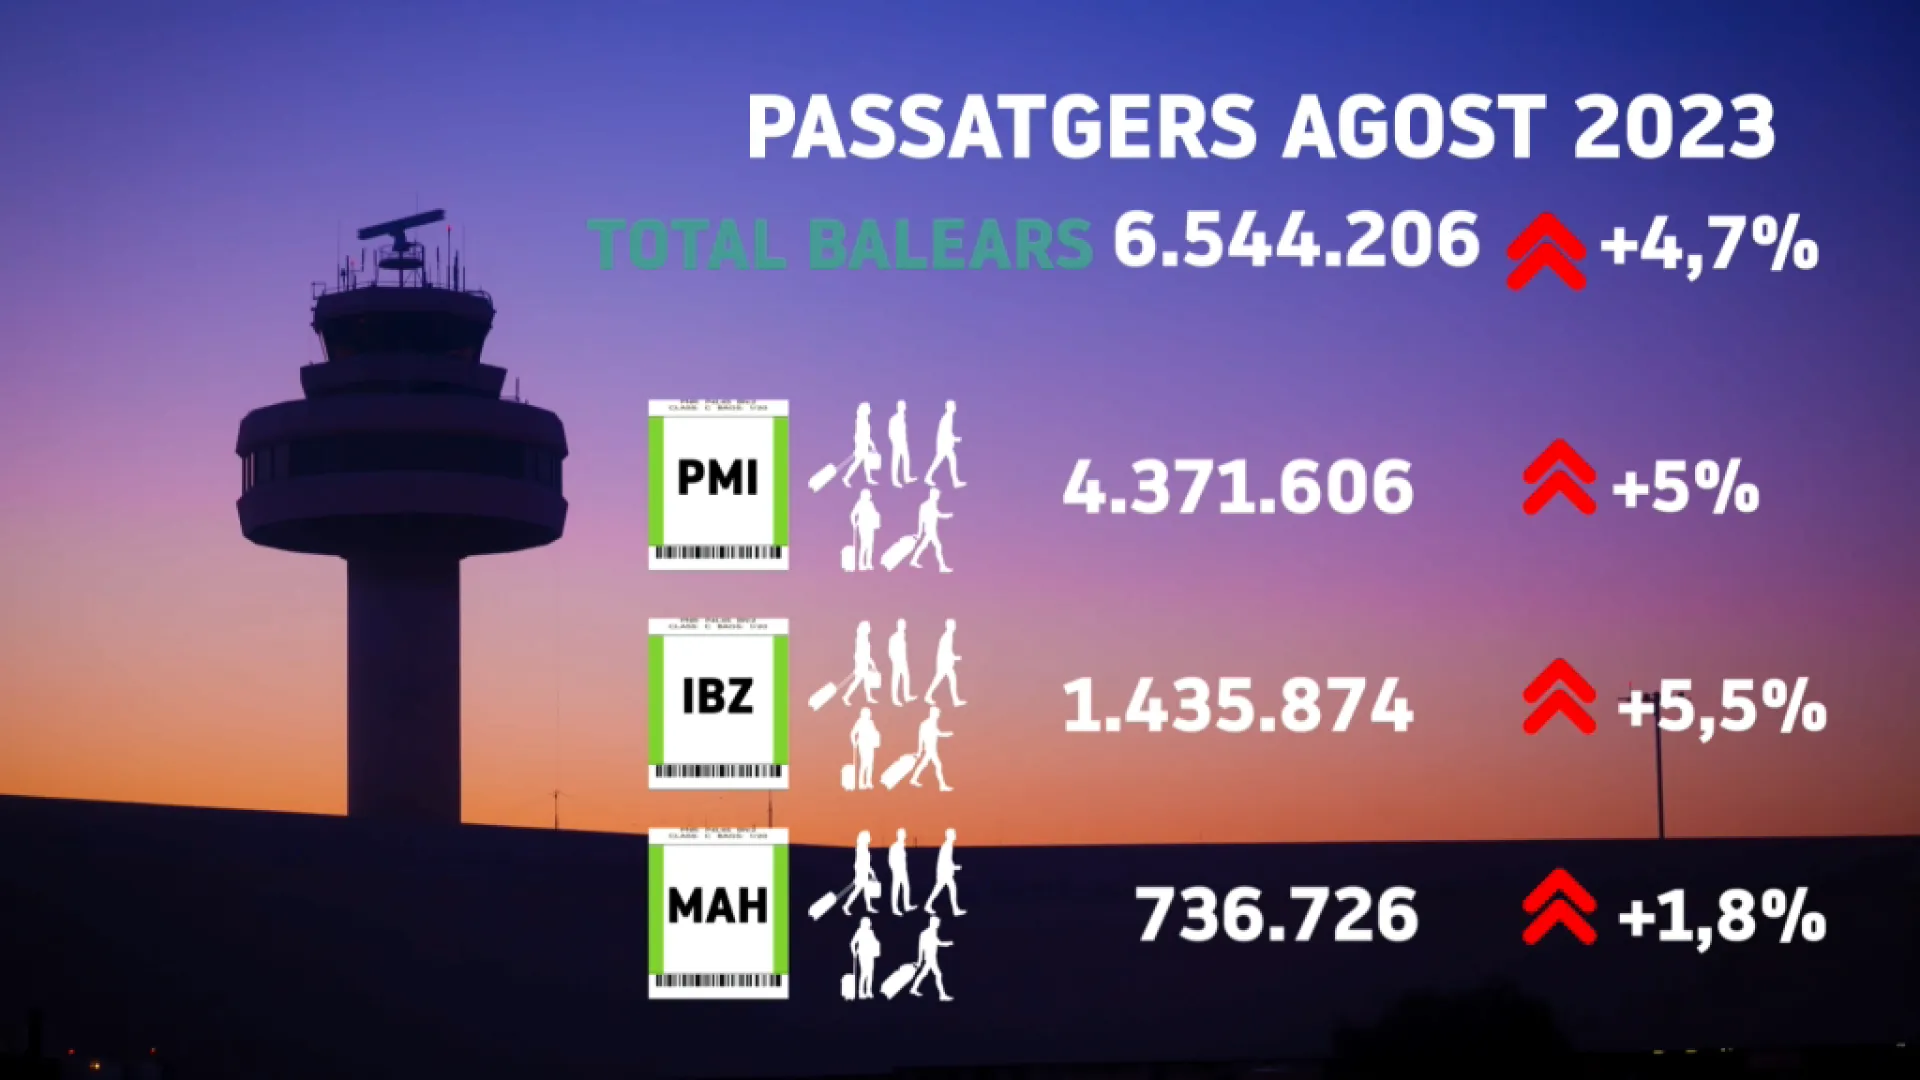 Els aeroports illencs tanquen l’agost amb un 4,7%25 més de passatgers que l’agost anterior